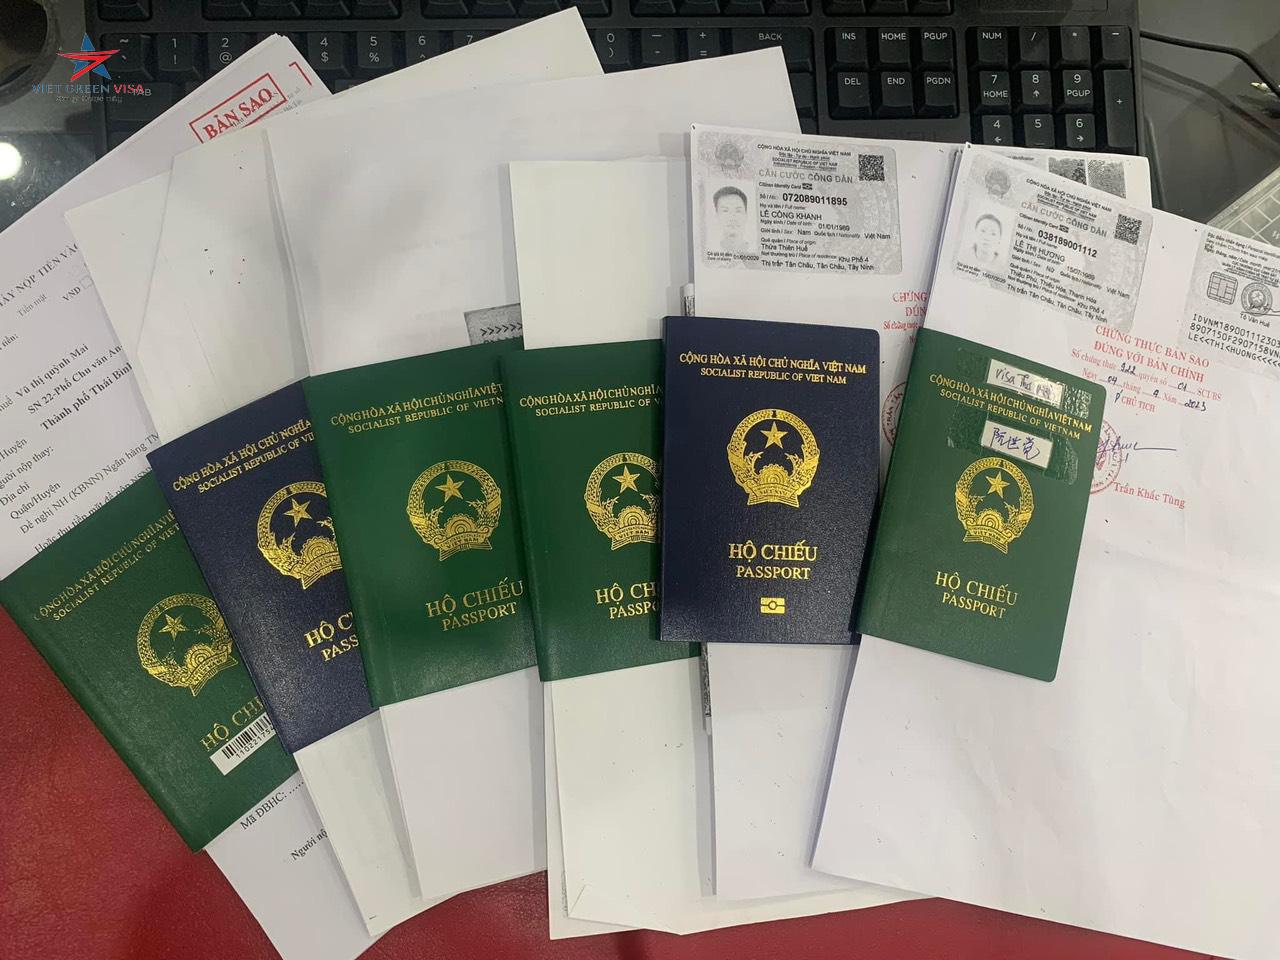 Dịch vụ làm hộ chiếu nhanh tại Hà Giang uy tín